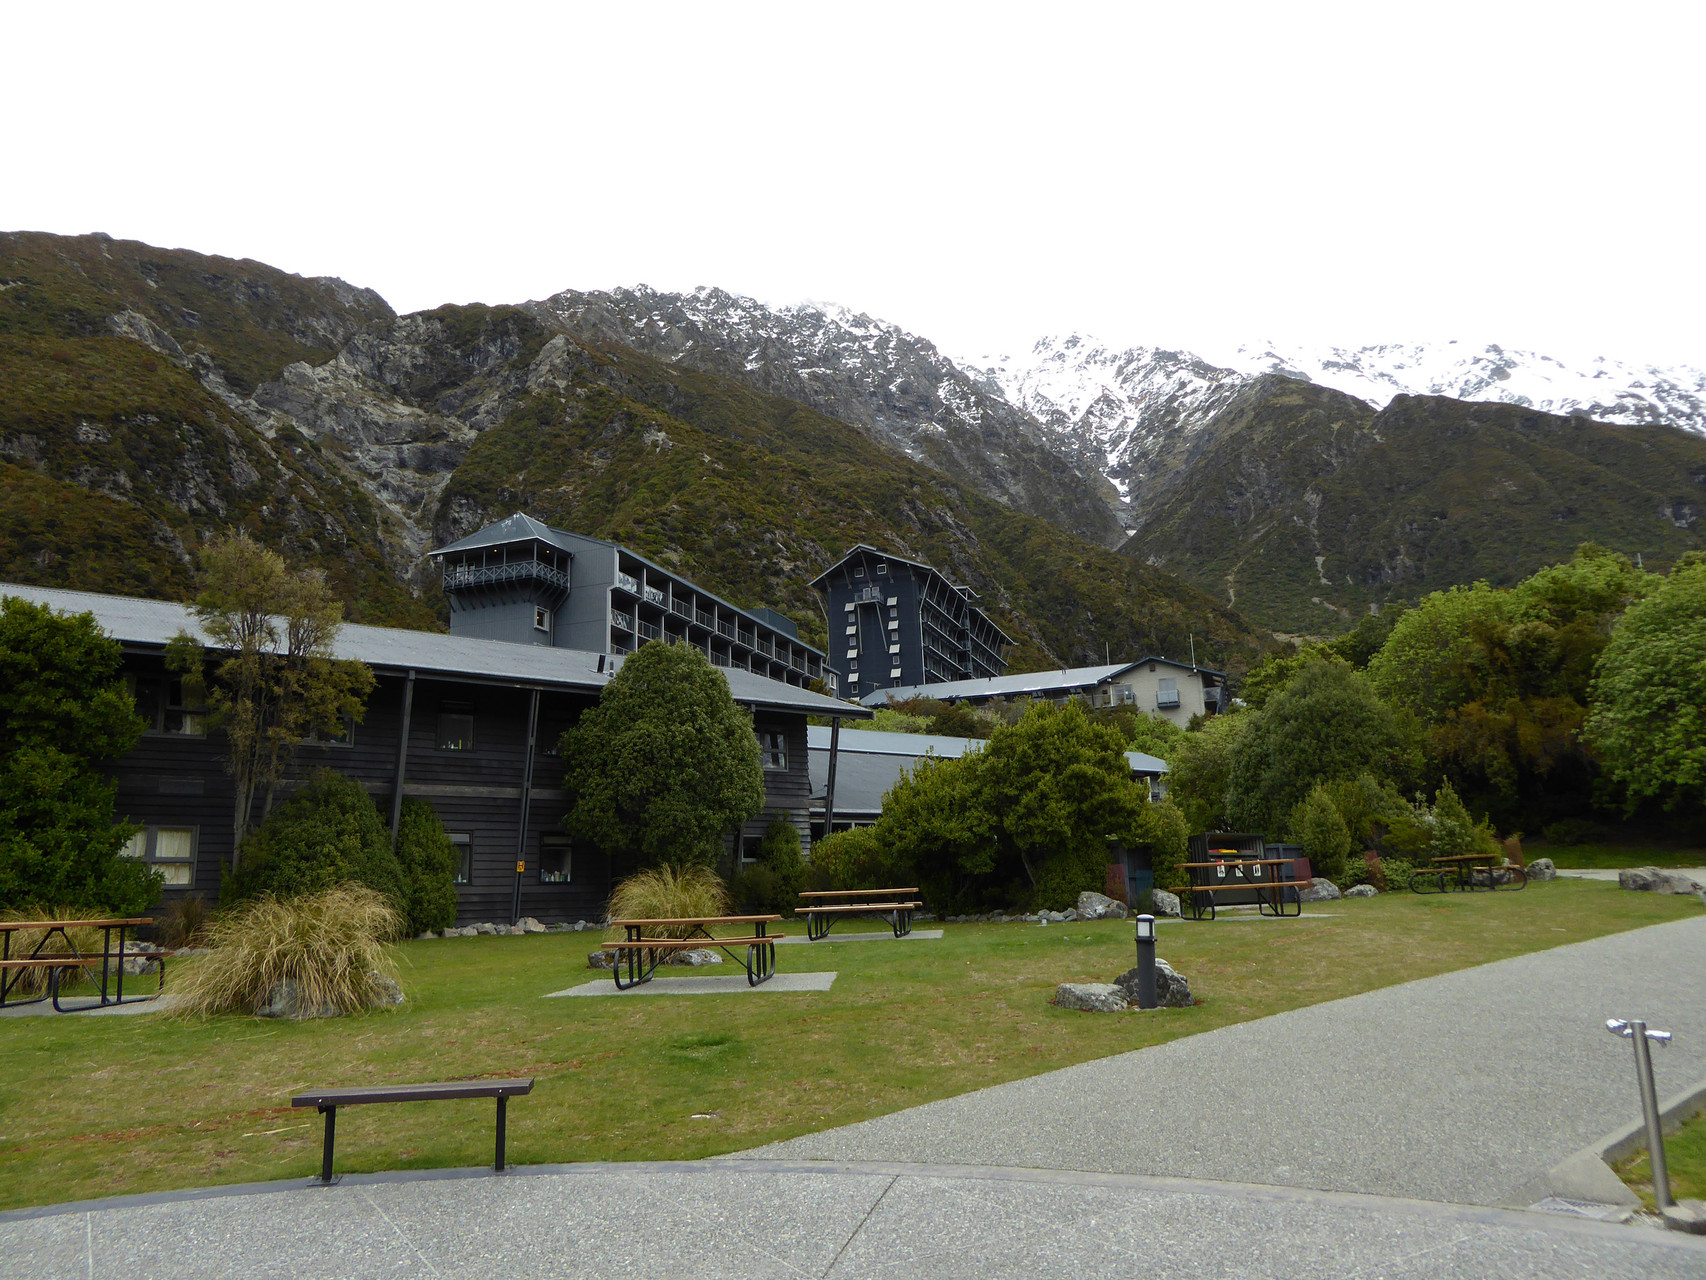 Mt. Cook Village.  Auch die Neuseeländer können durchaus hässliche Ferienorte erbauen.